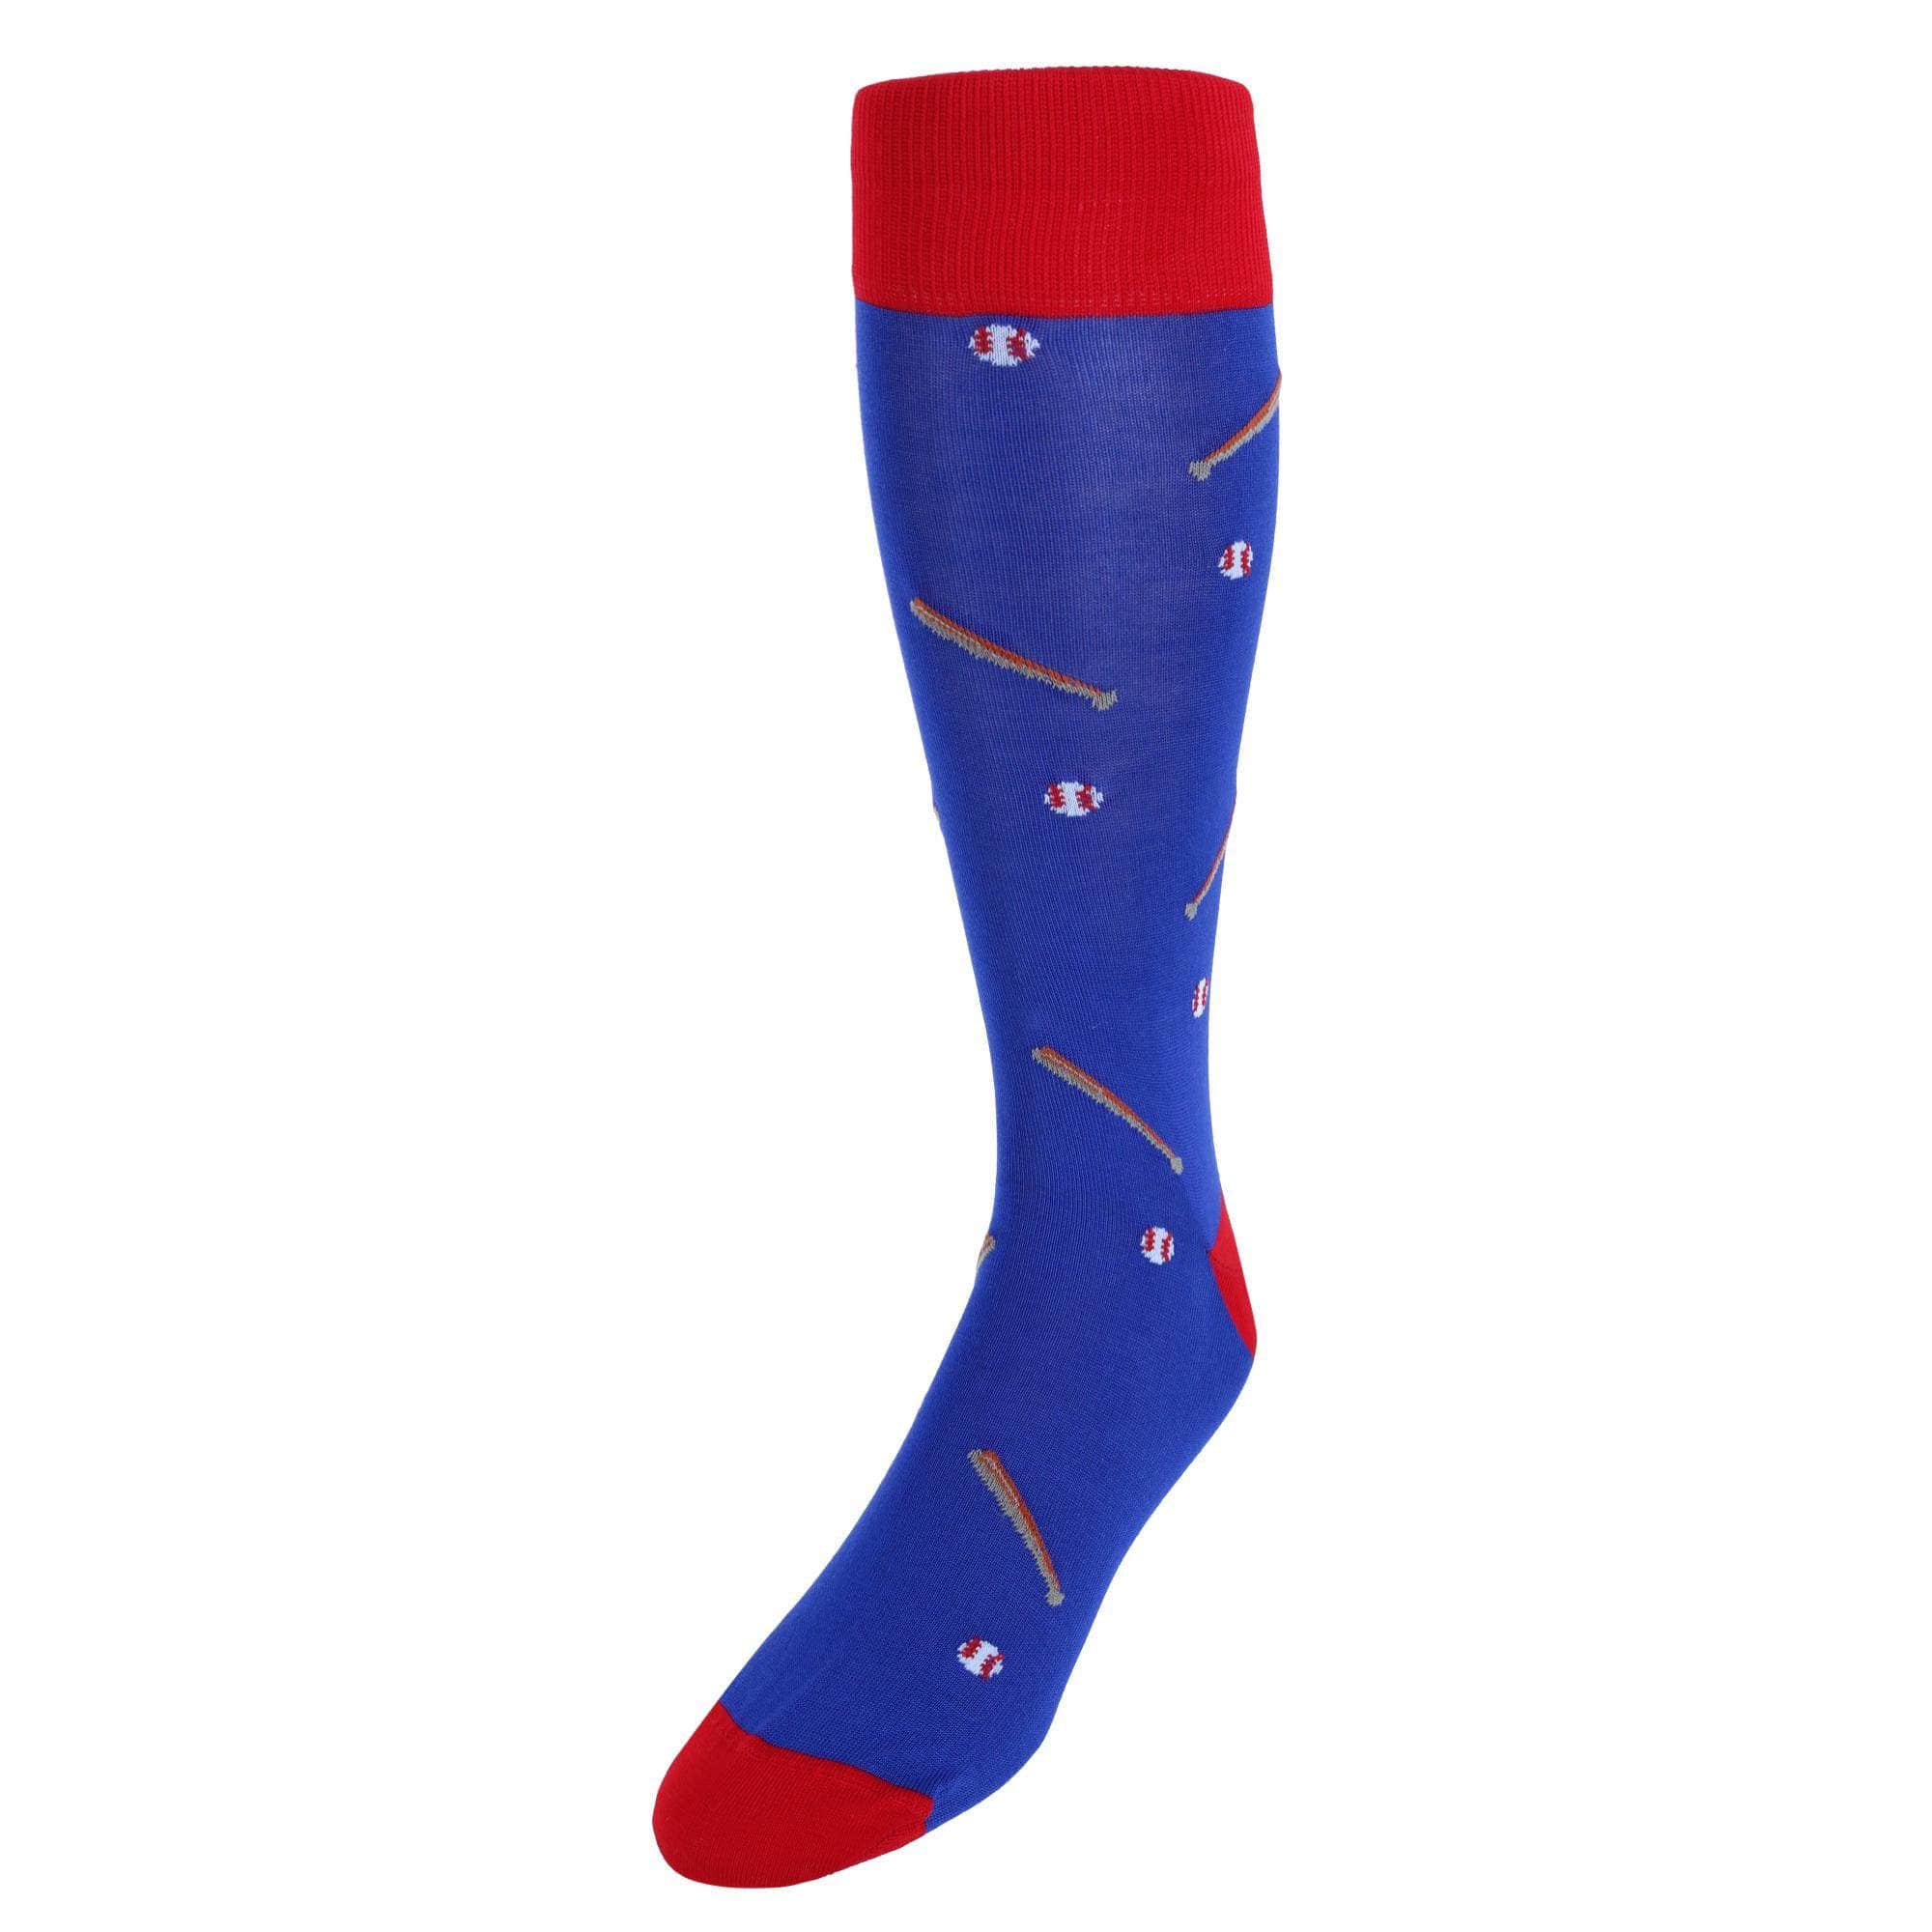 Baseball Socks - Fun and Crazy Socks at